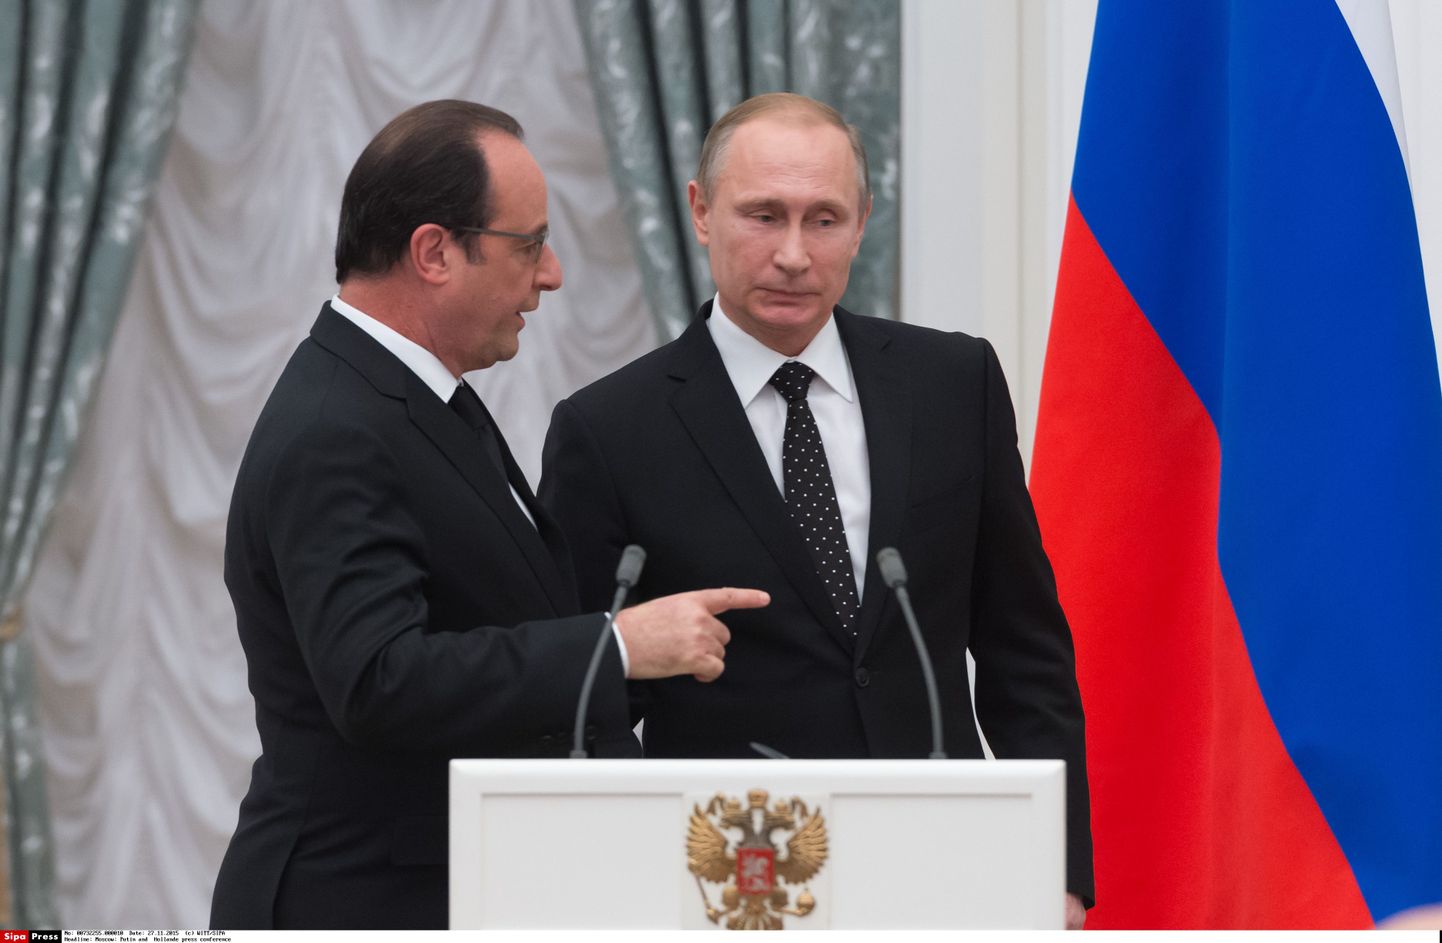 Prantsuse president Francois Hollande ja Vene riigipea Vladimir Putin eile Moskvas pressikonverentsil.